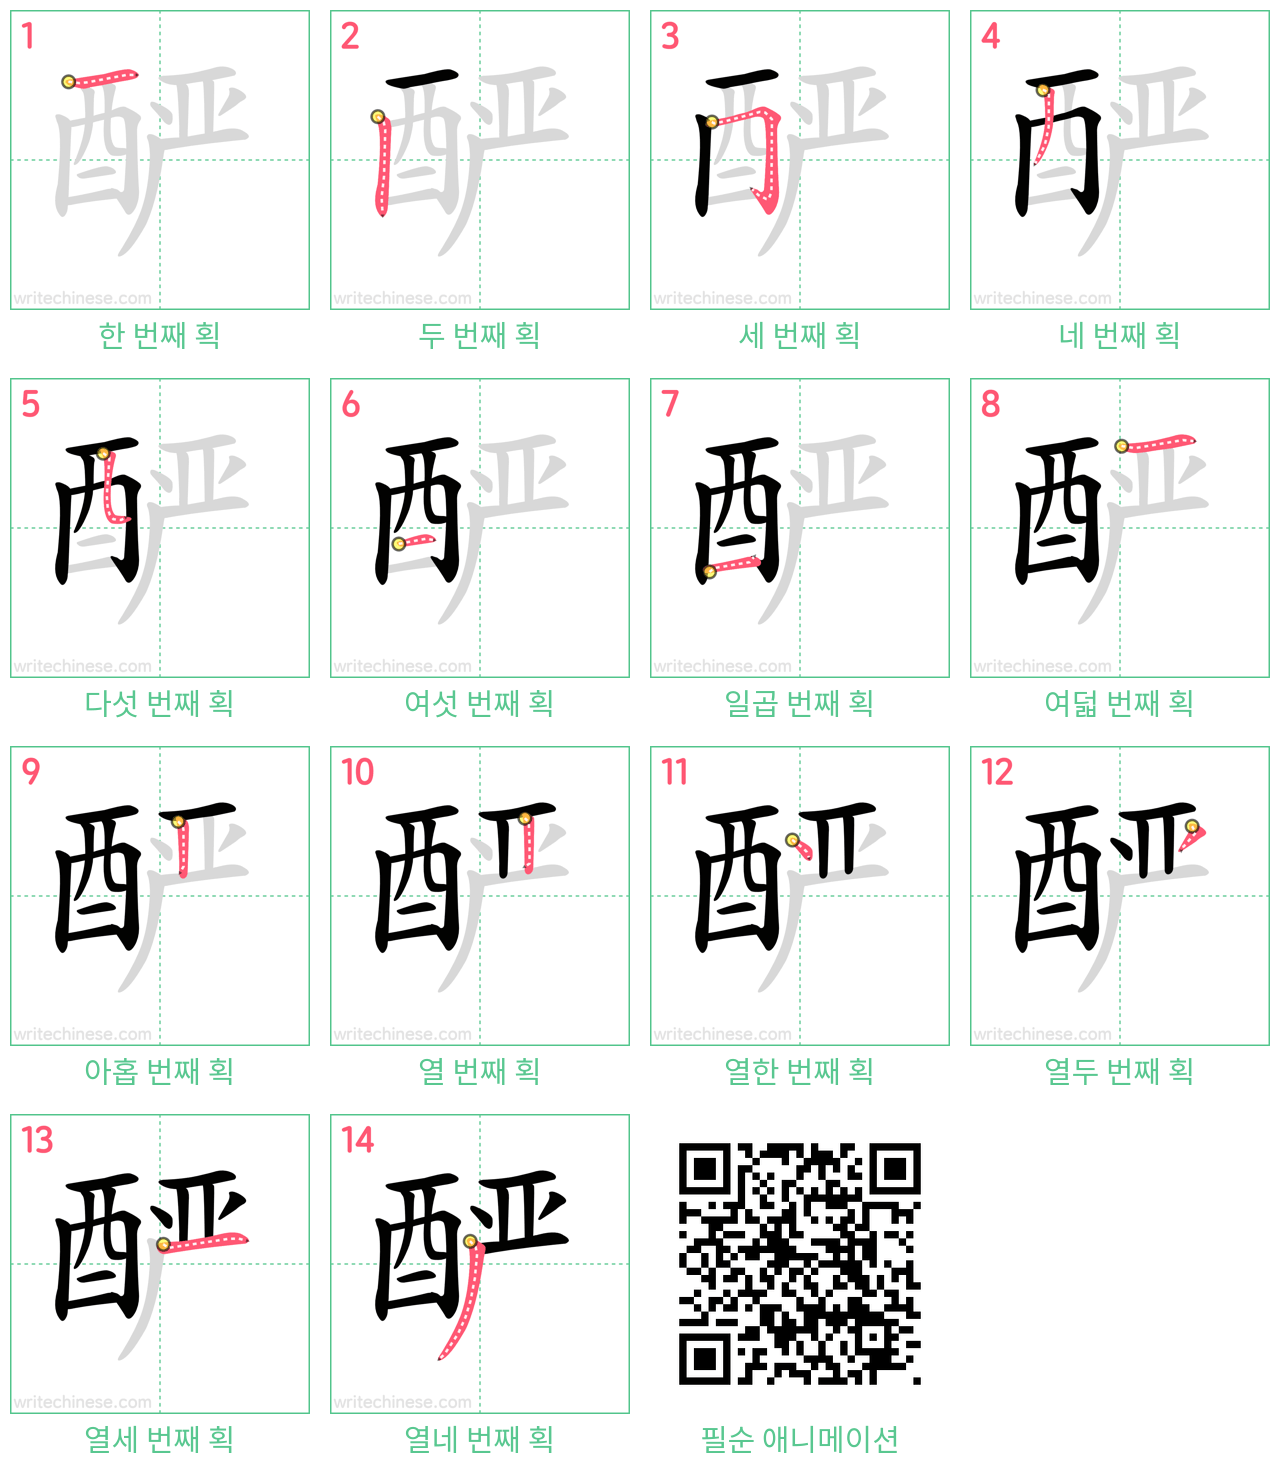 酽 step-by-step stroke order diagrams